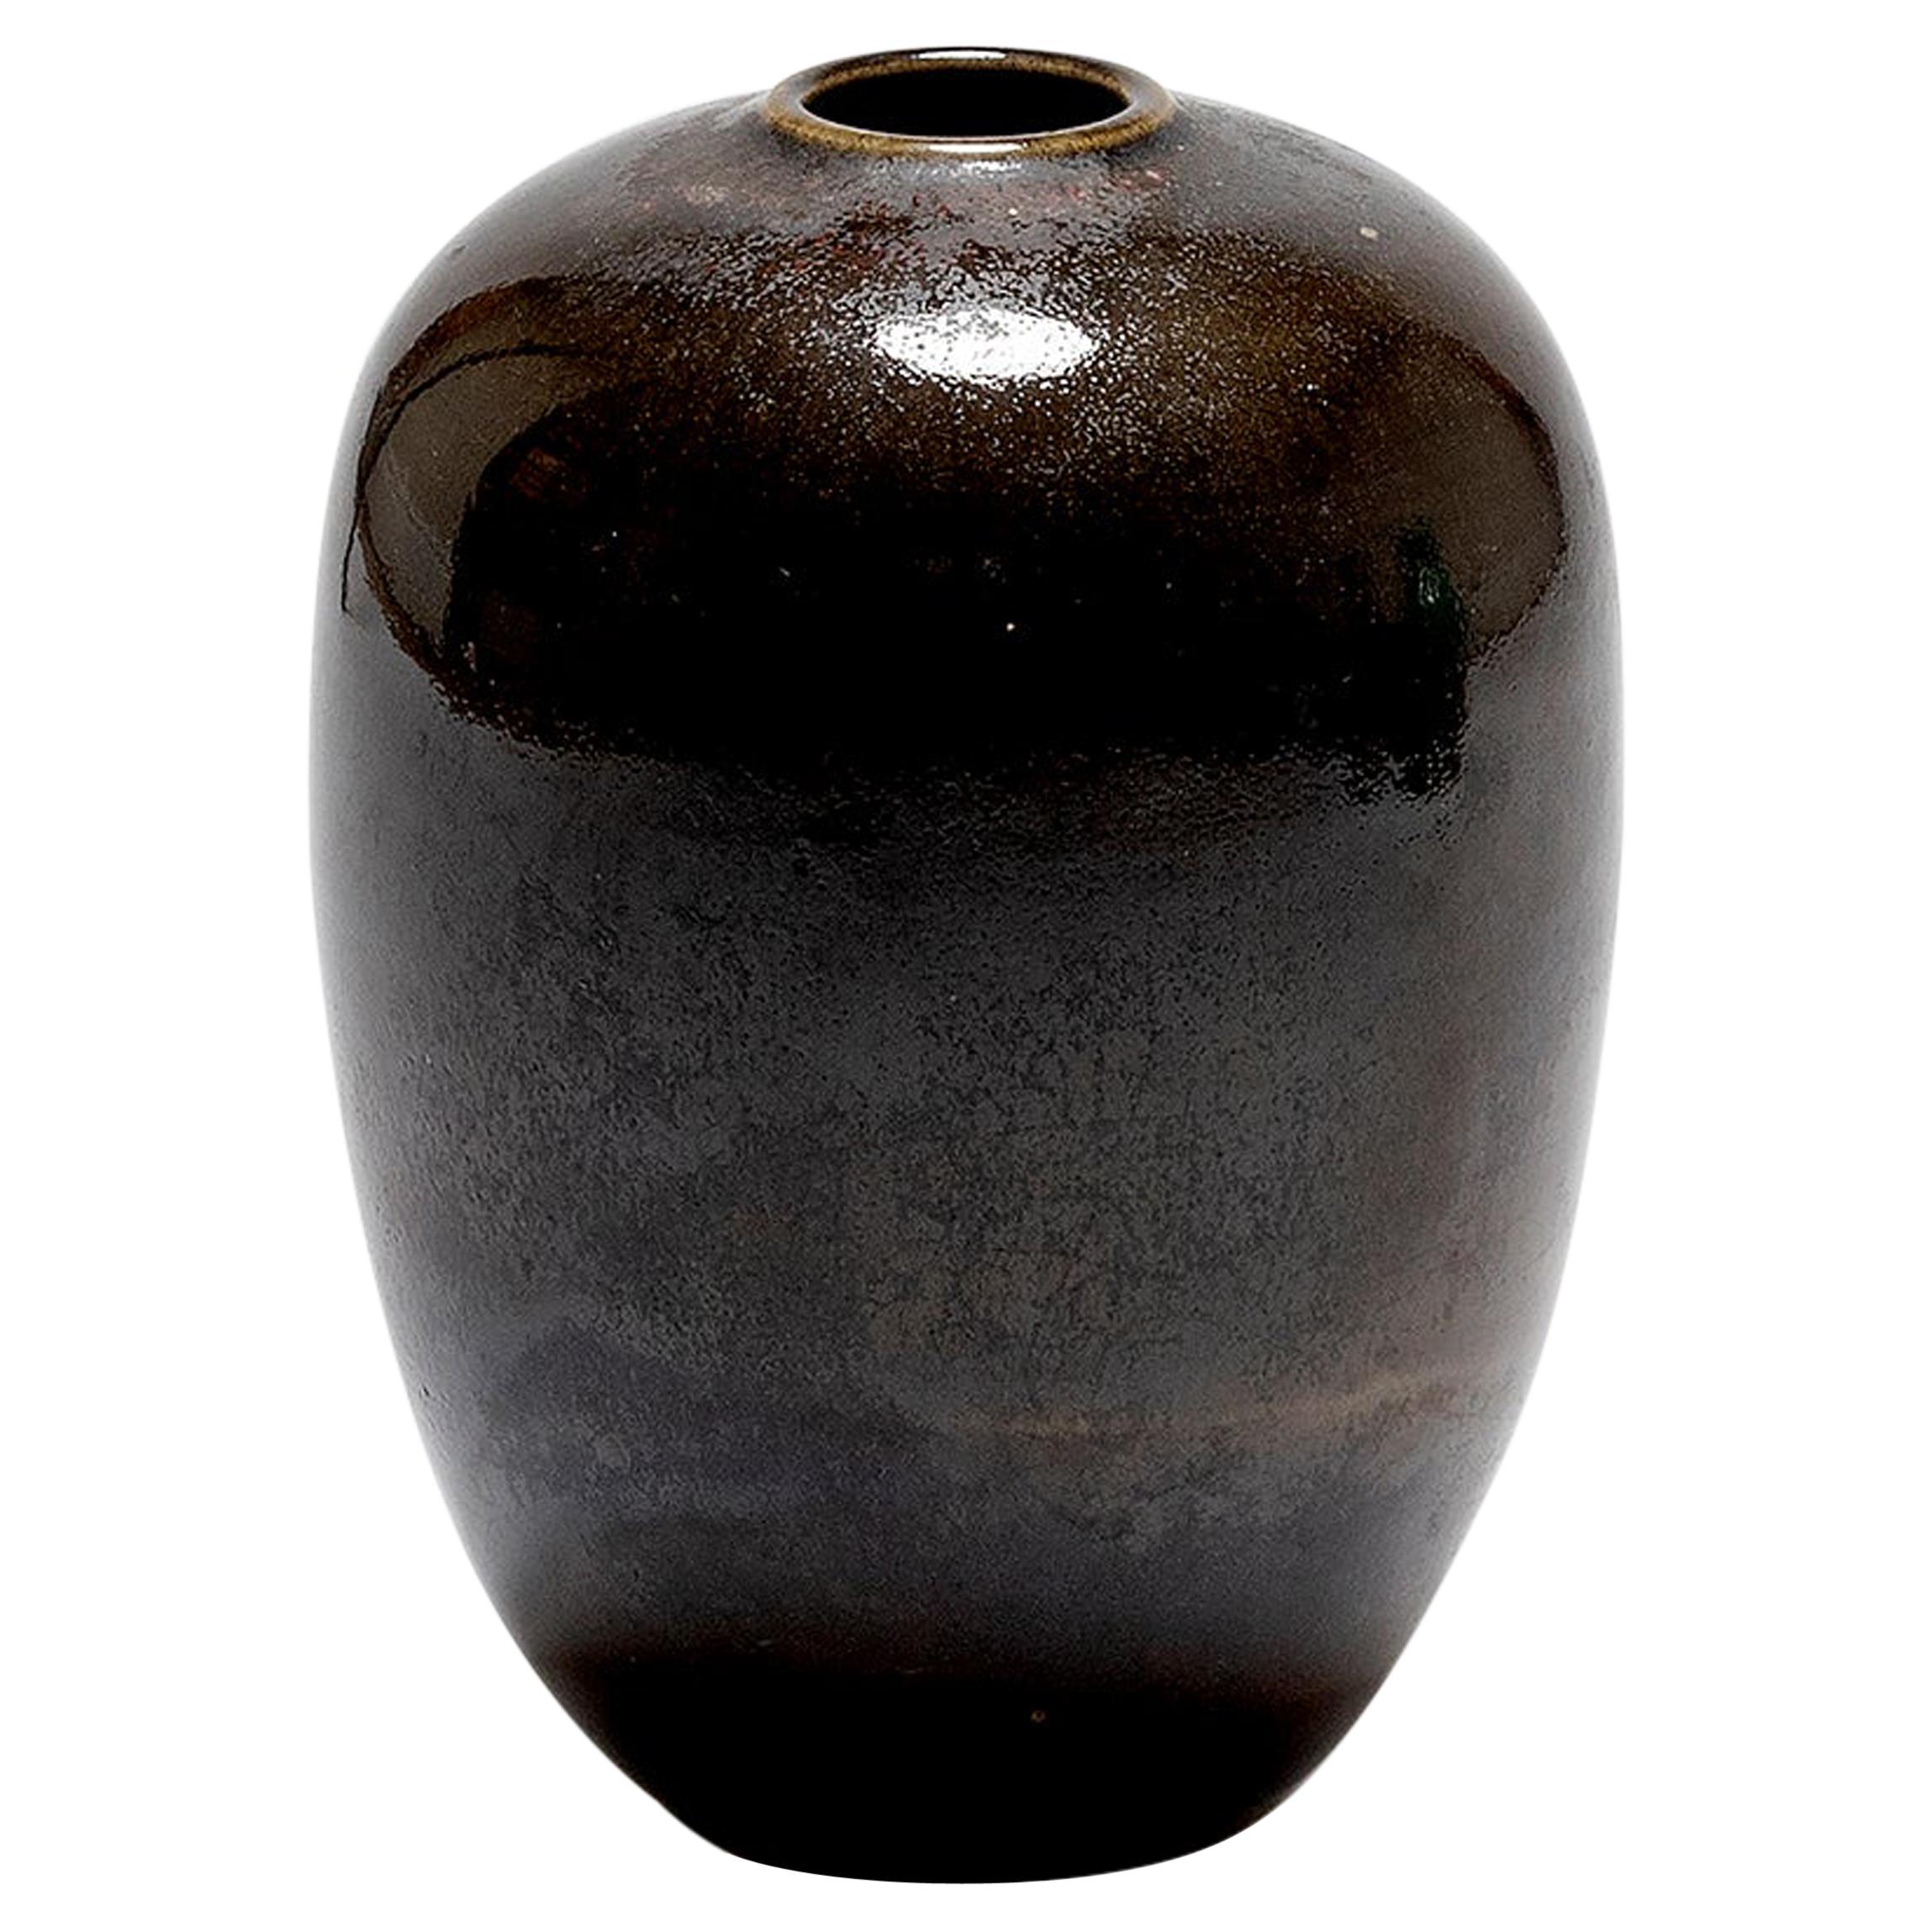 French 1970s Ceramic Vase